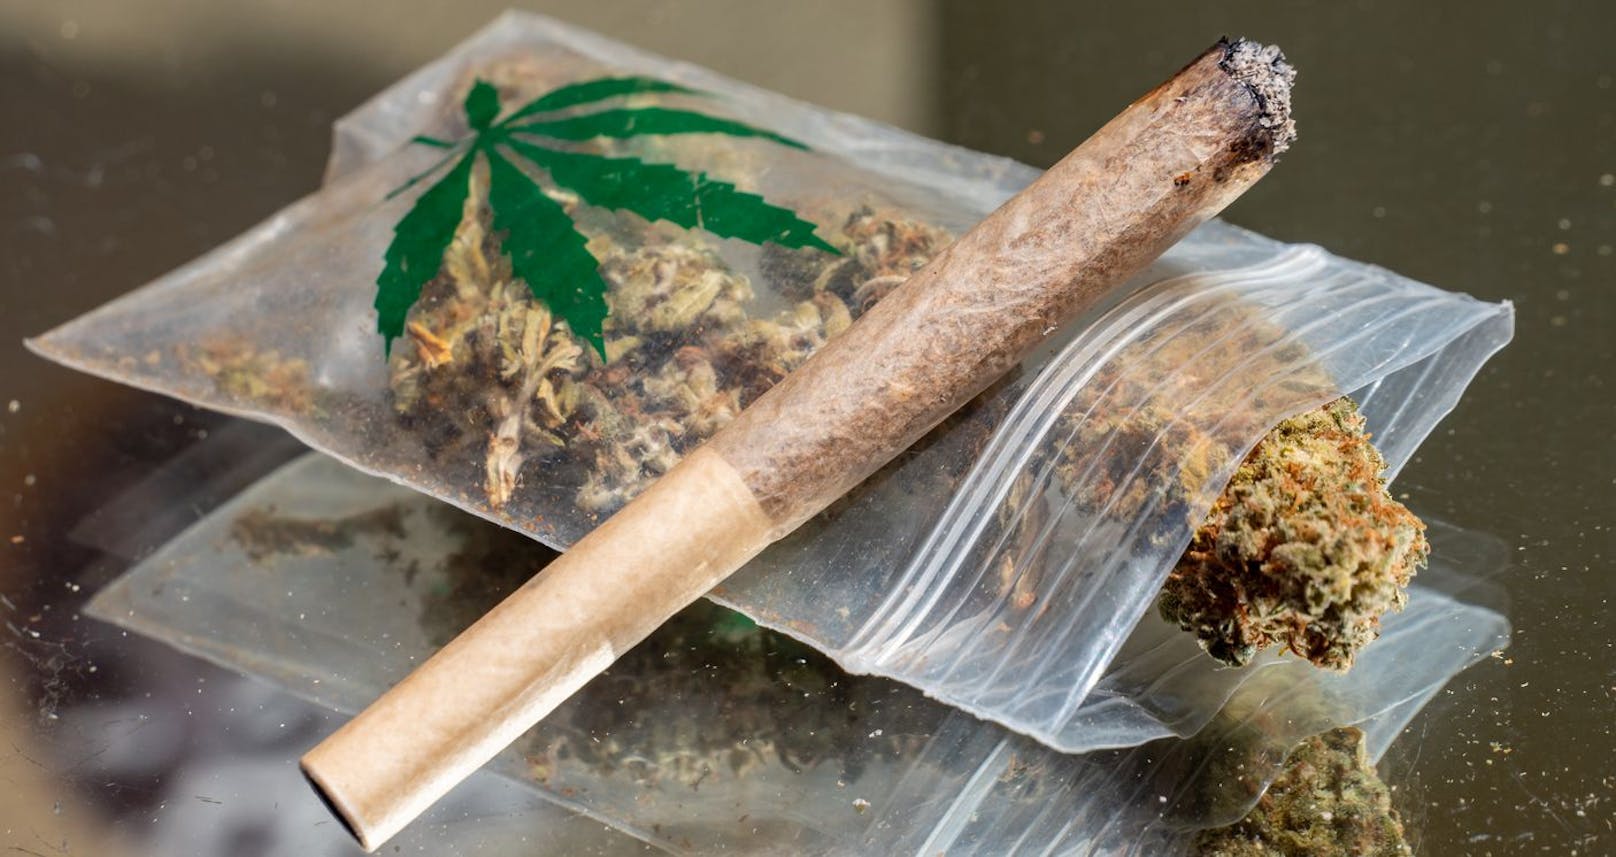 In kontrolliertem Umfeld soll Cannabis gekauft und konsumiert werden, wünschen sich die Wiener Junos.